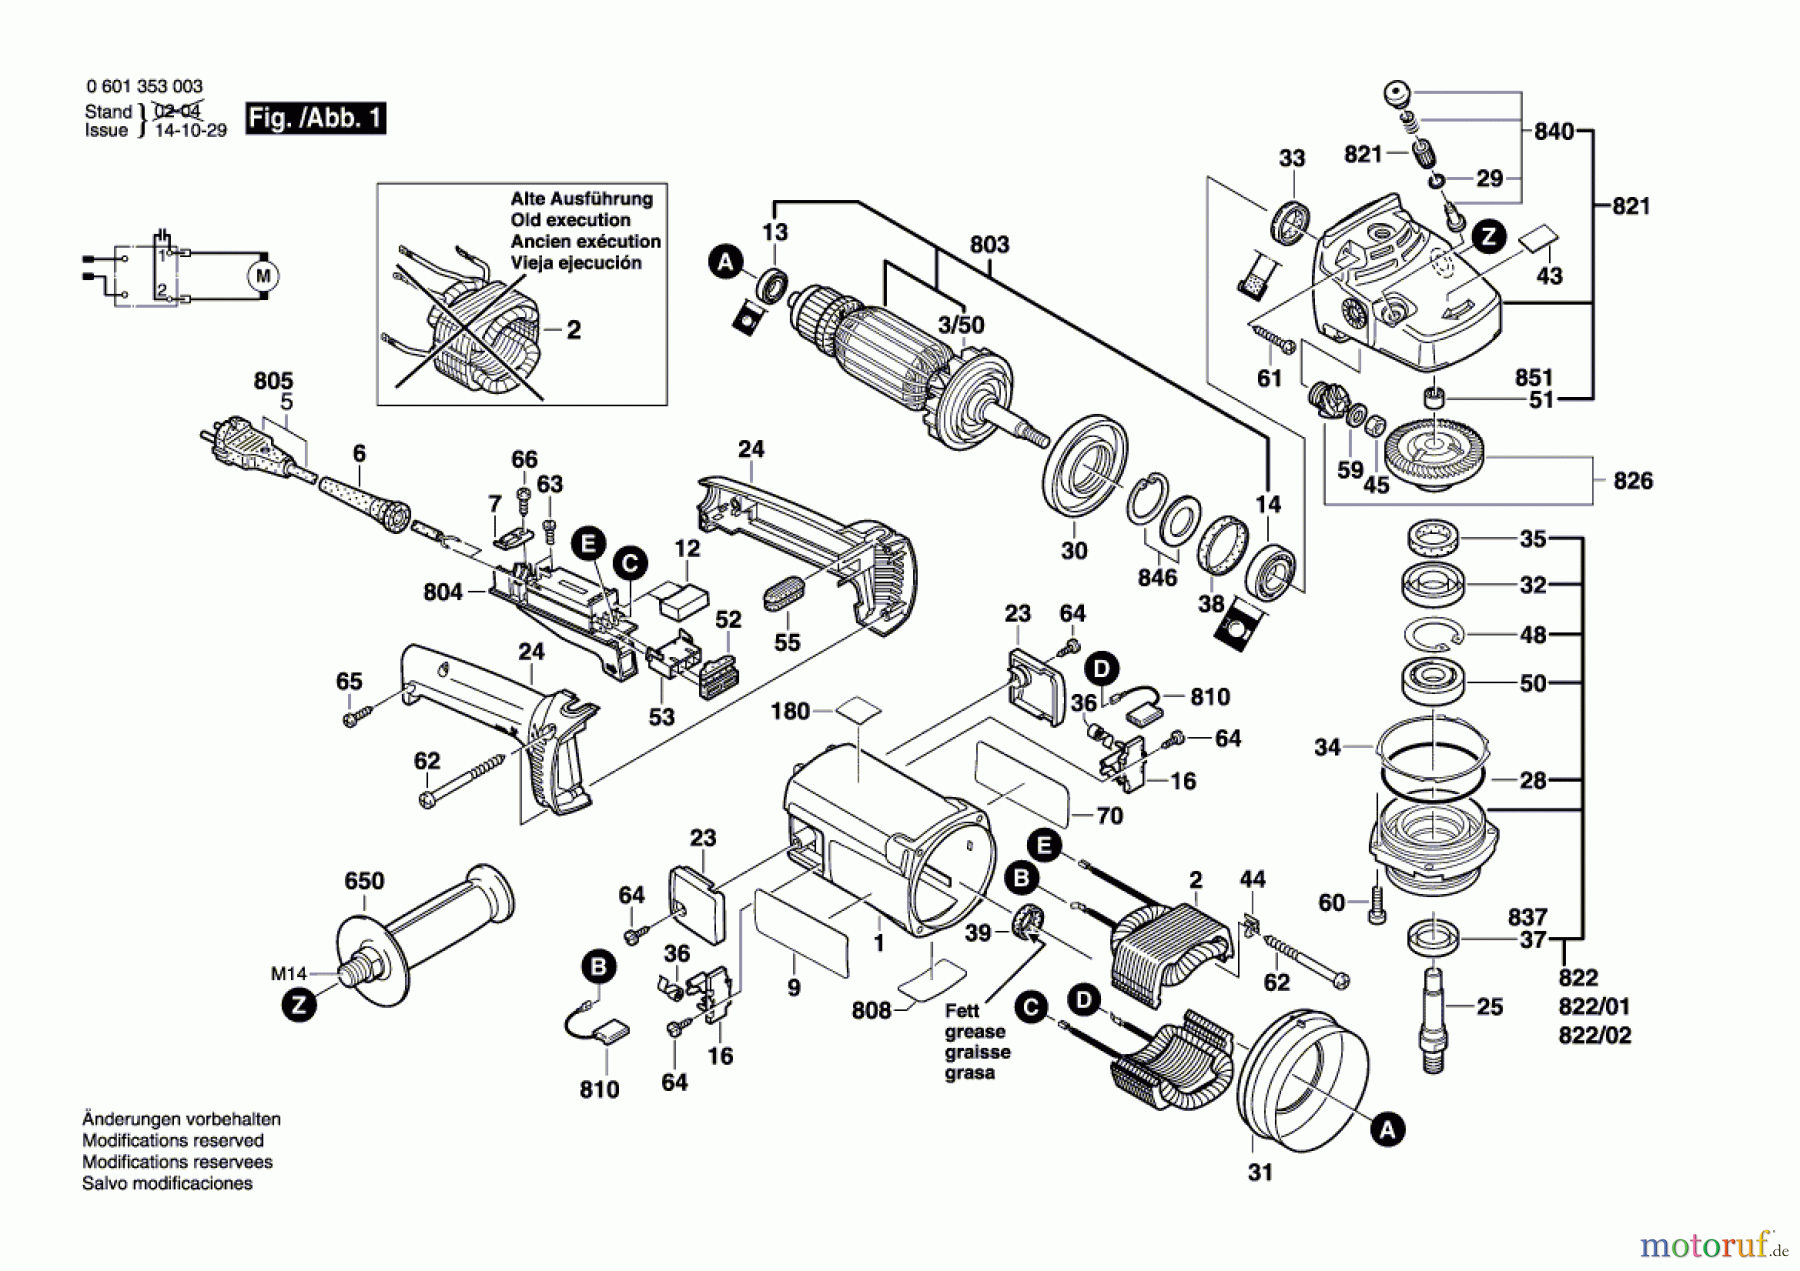  Bosch Werkzeug Winkelschleifer GWS 18 U Seite 1